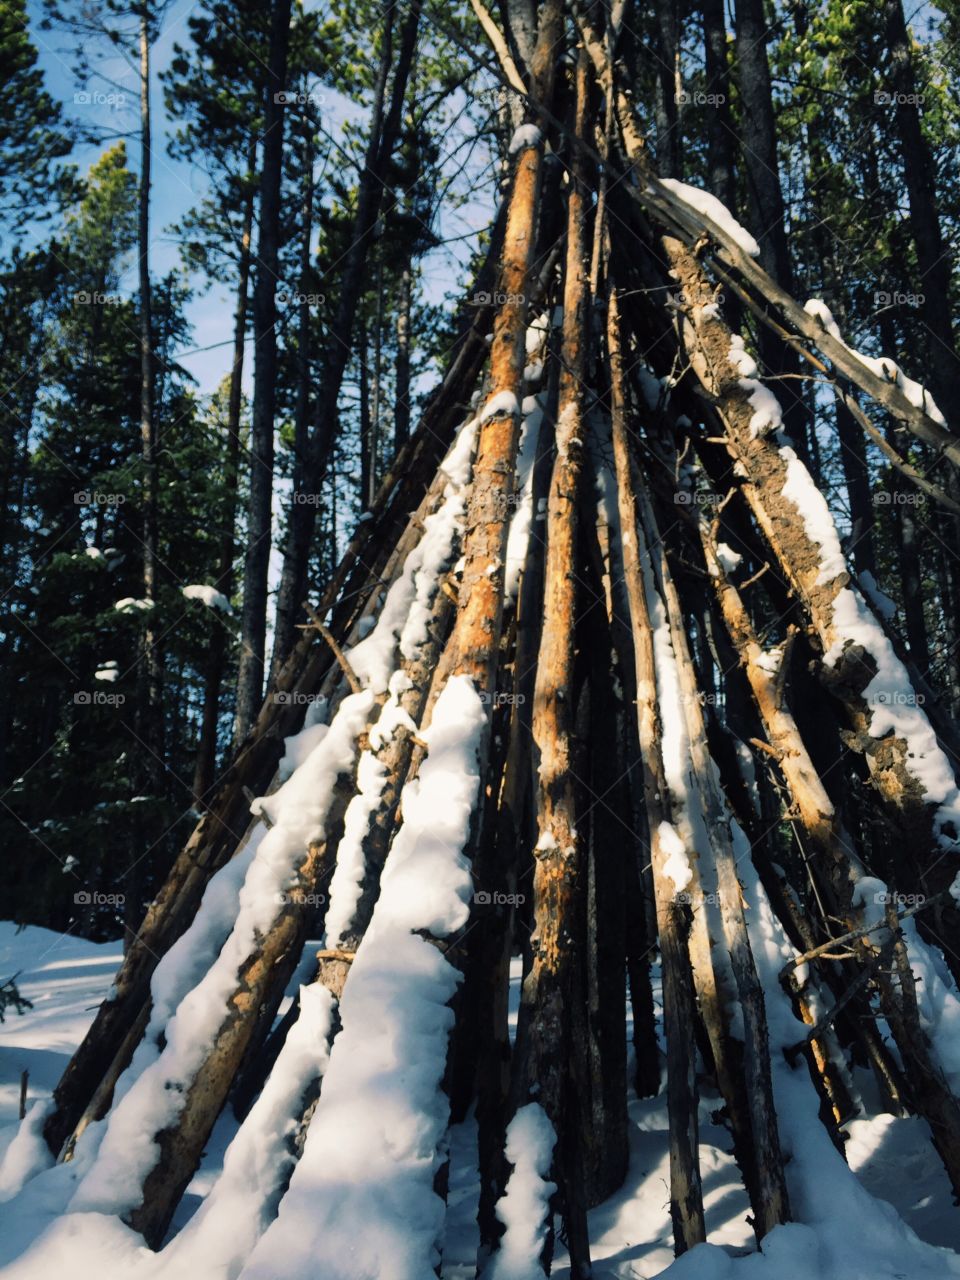 Arrangement of frozen tree branches